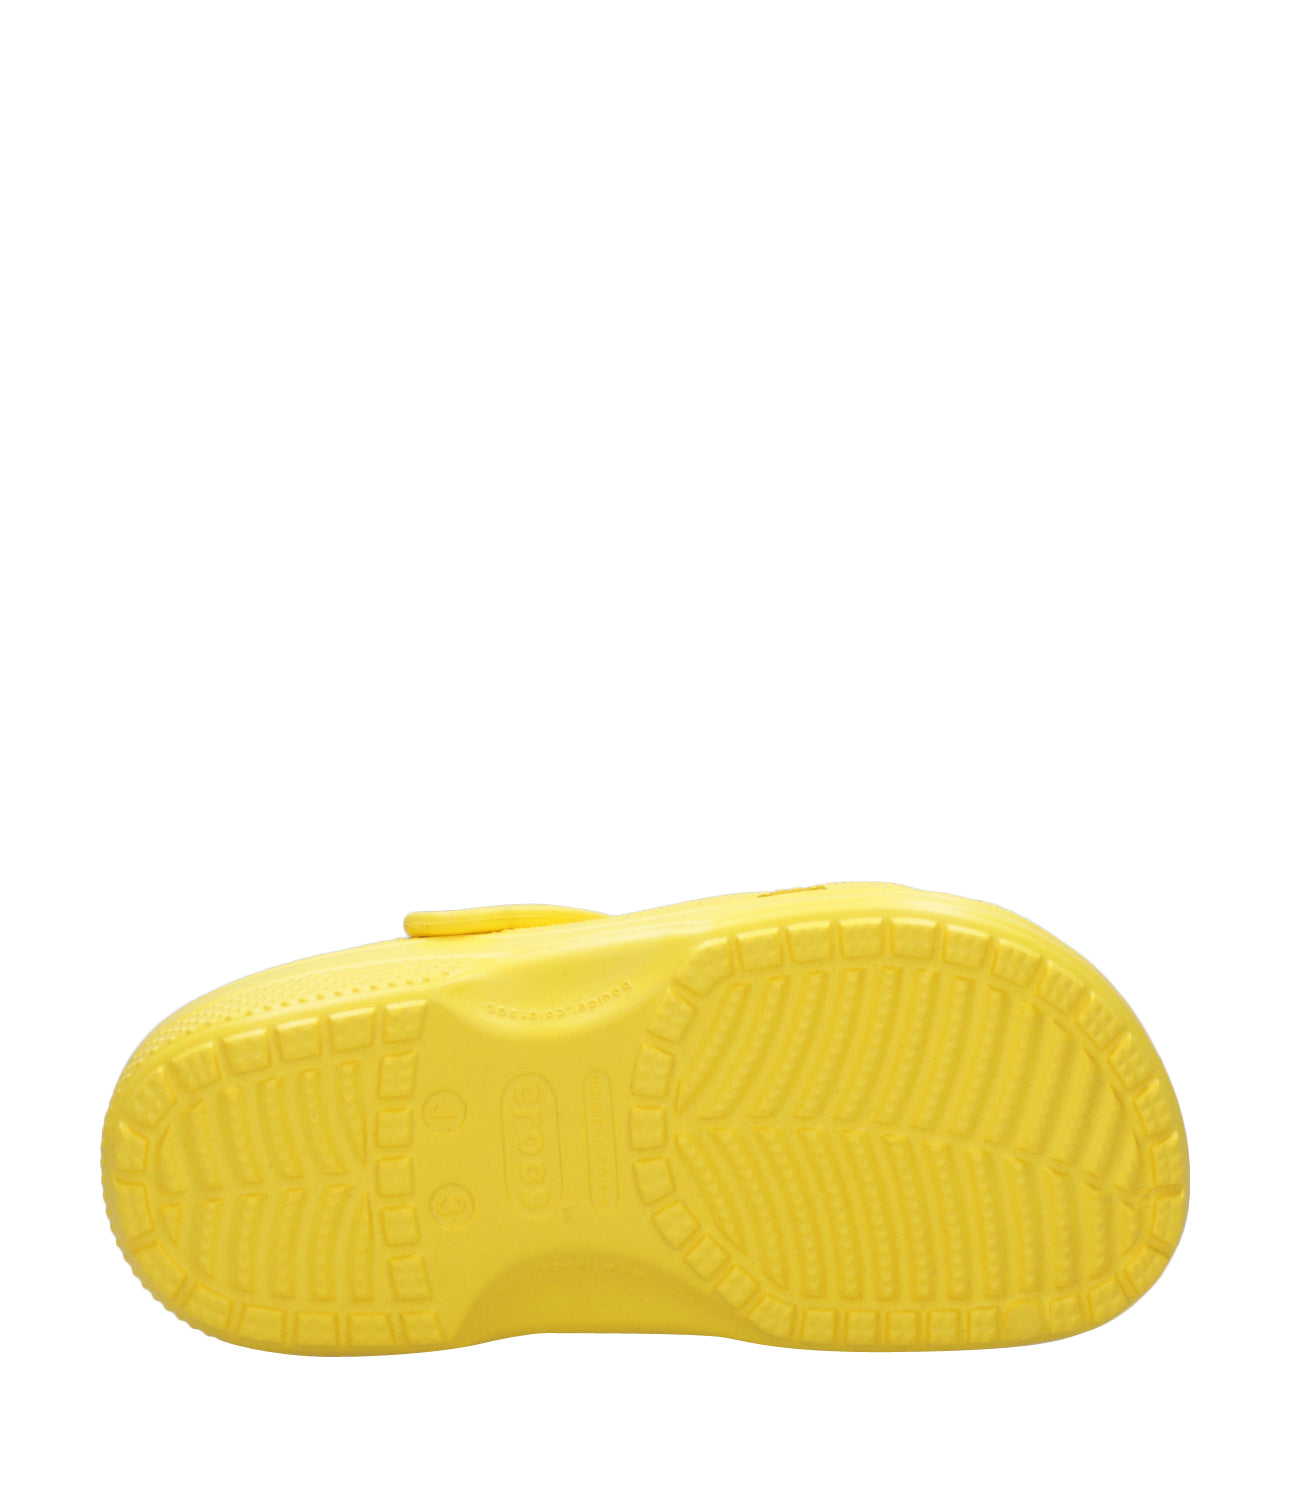 Crocs Kids | Sabot Classic Clog Yellow